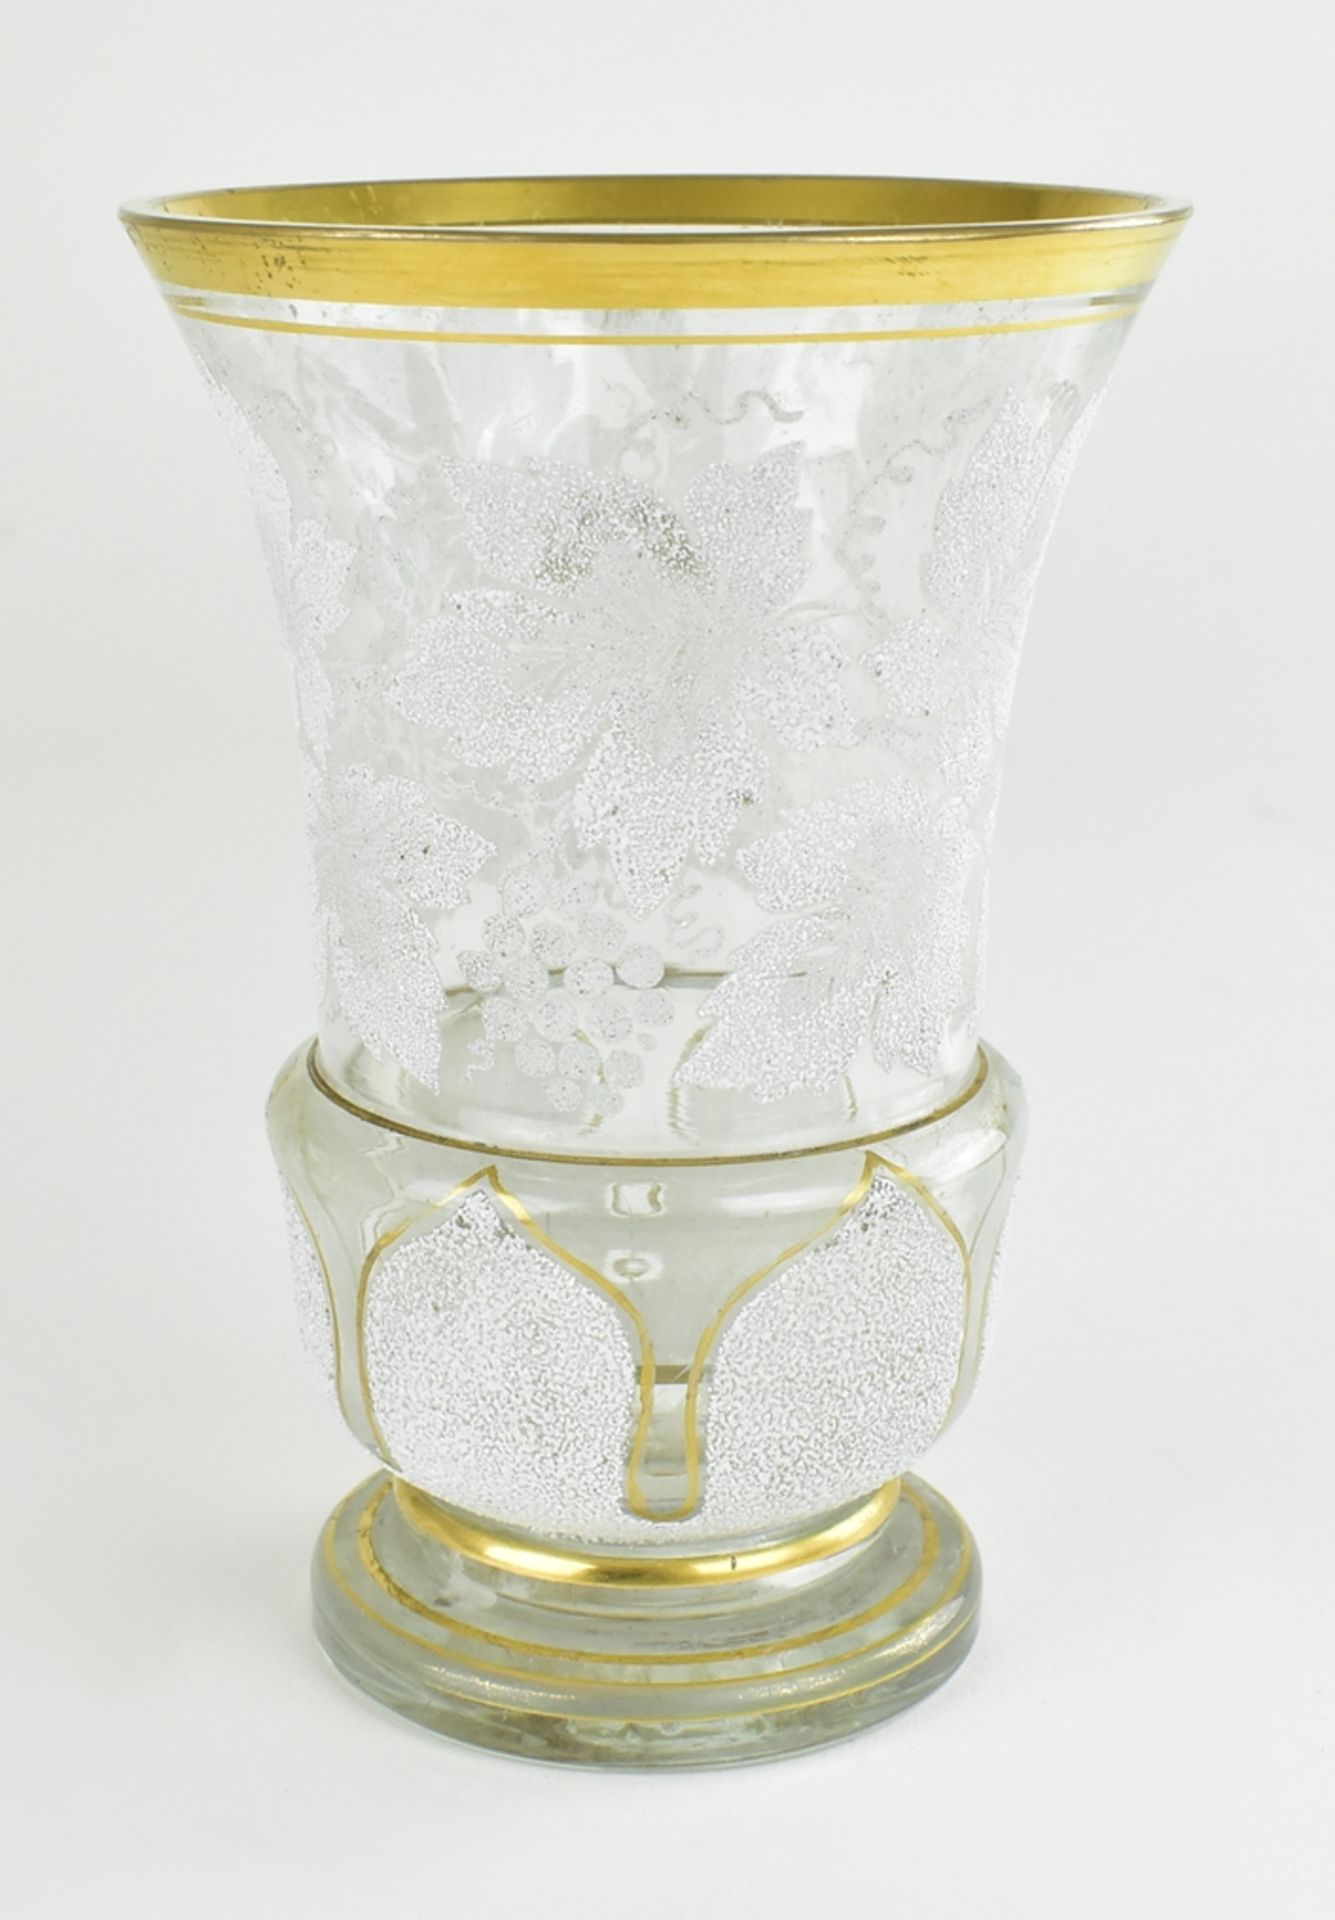 Kelchglas.  Geätzter Dekor mit Weihnlaub. Böhmen, Ende 19. Jh. H 12 cm